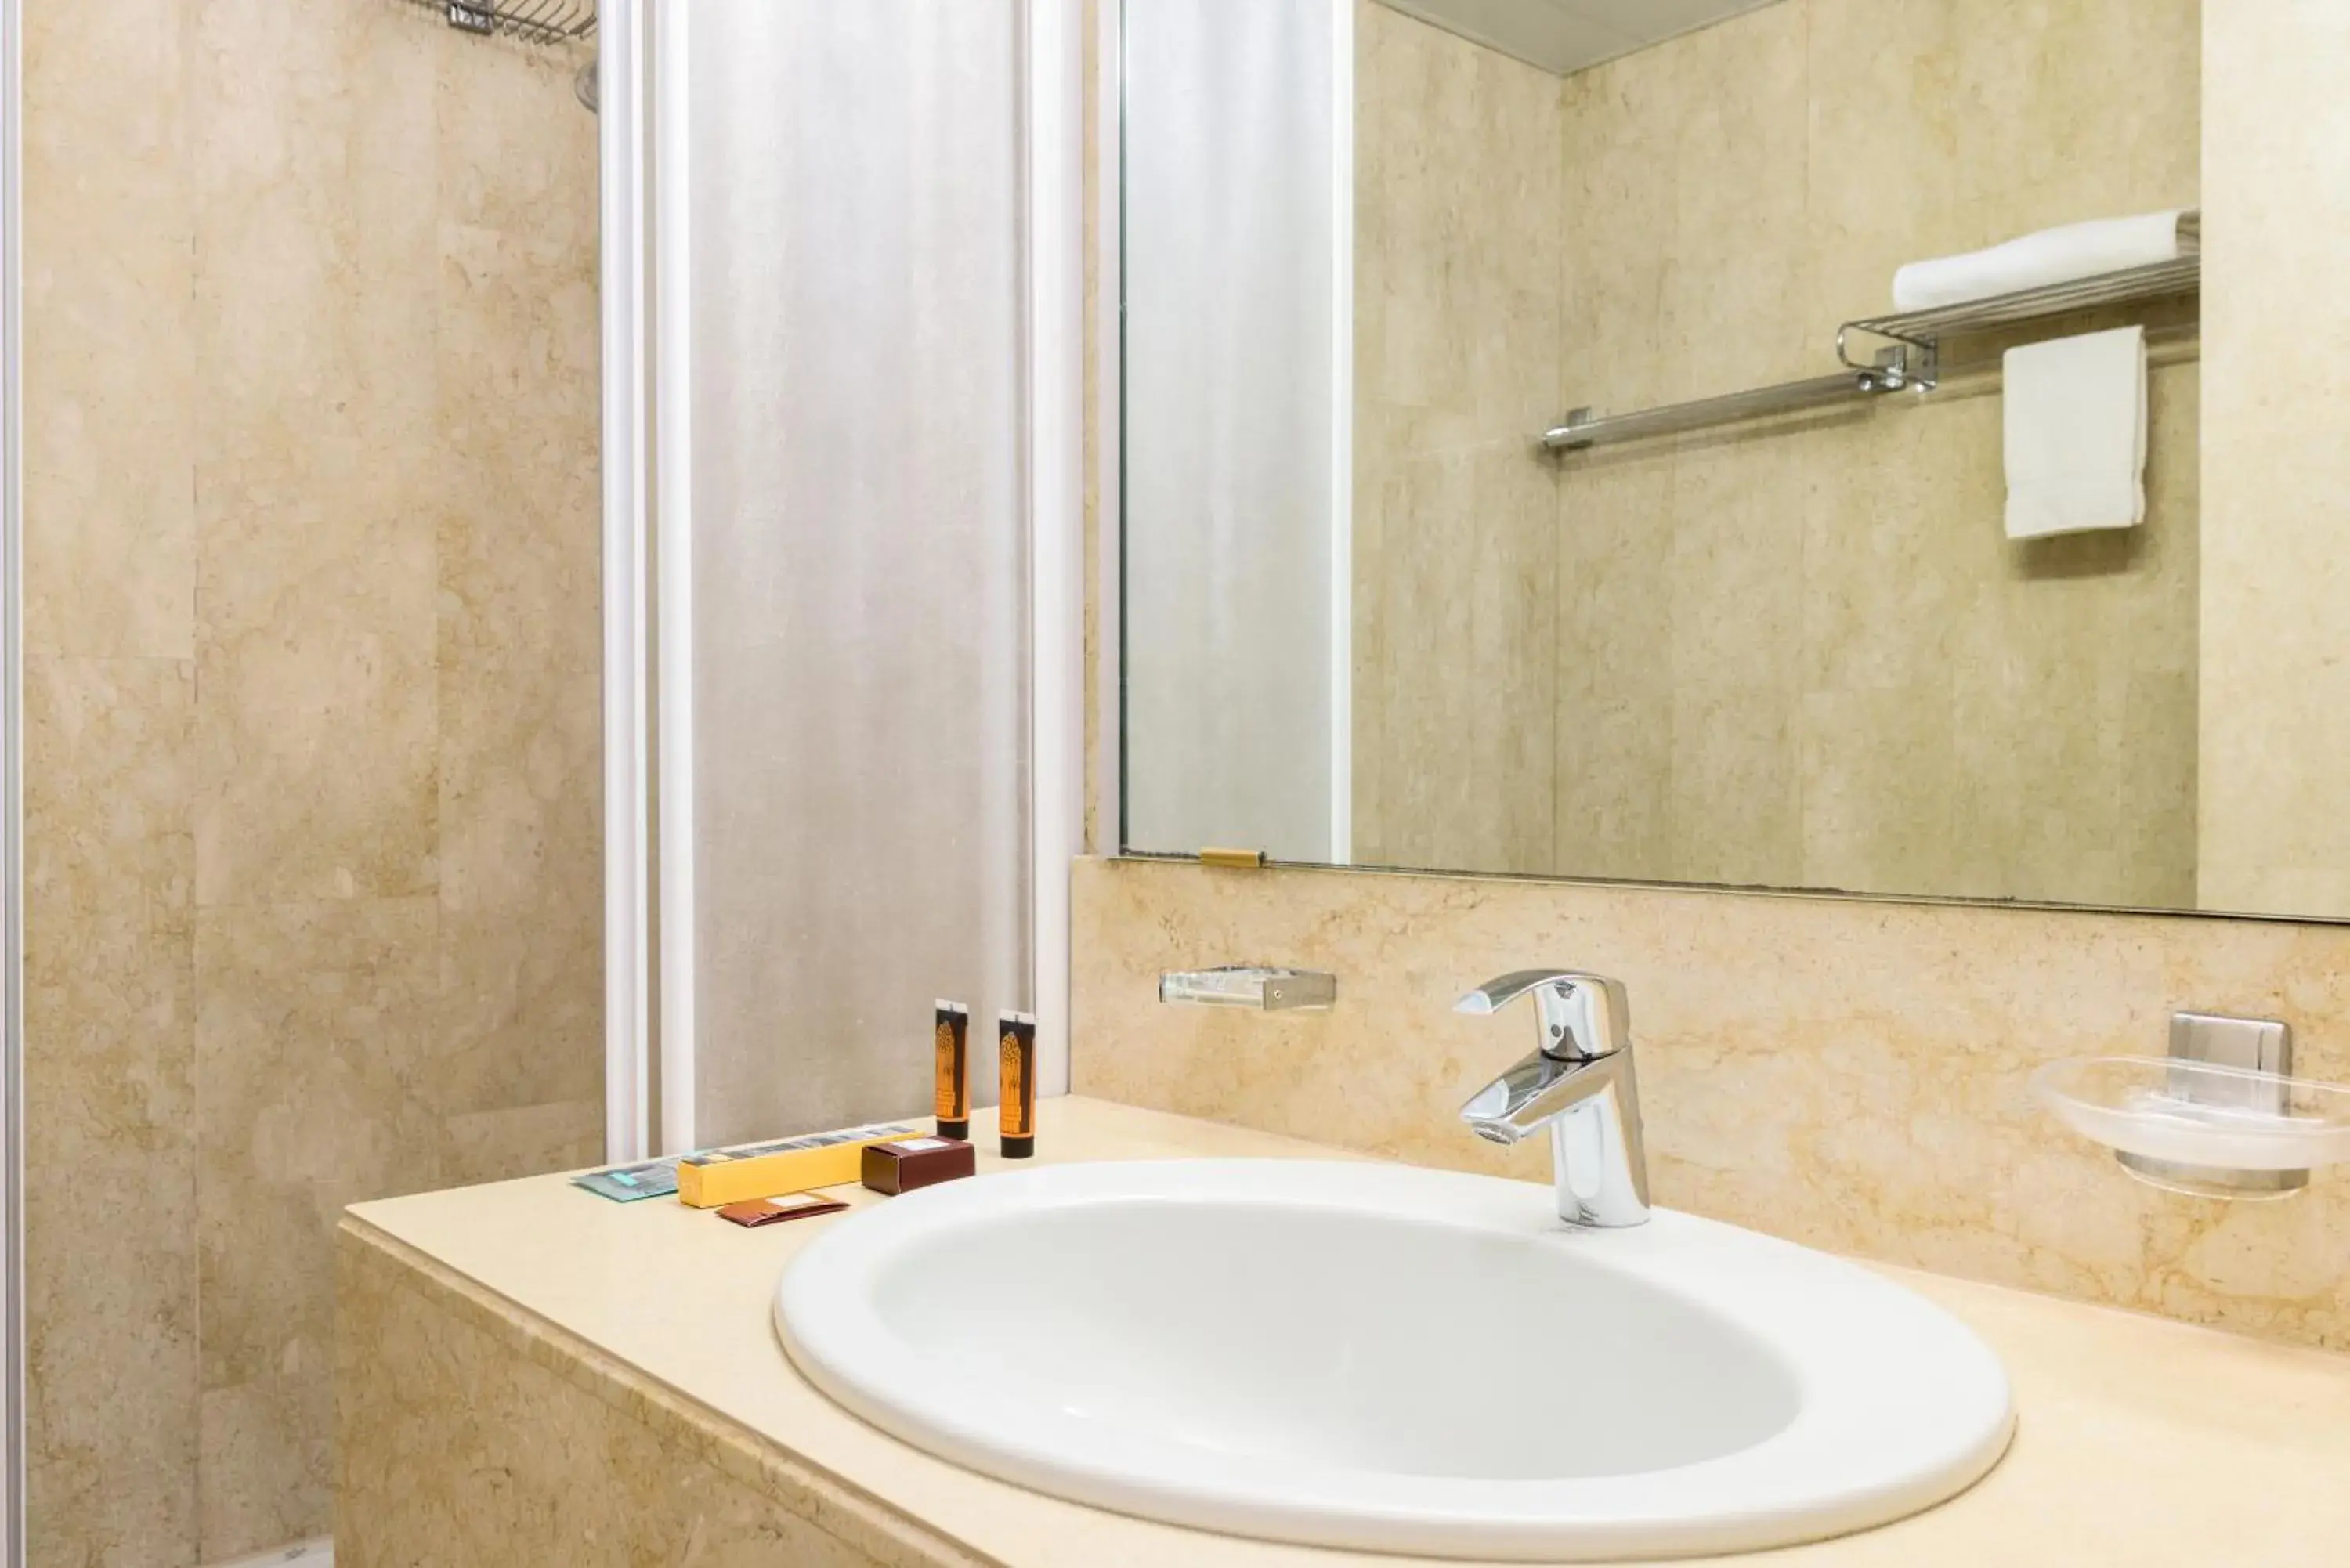 Shower, Bathroom in B&B Hotel Milano Aosta